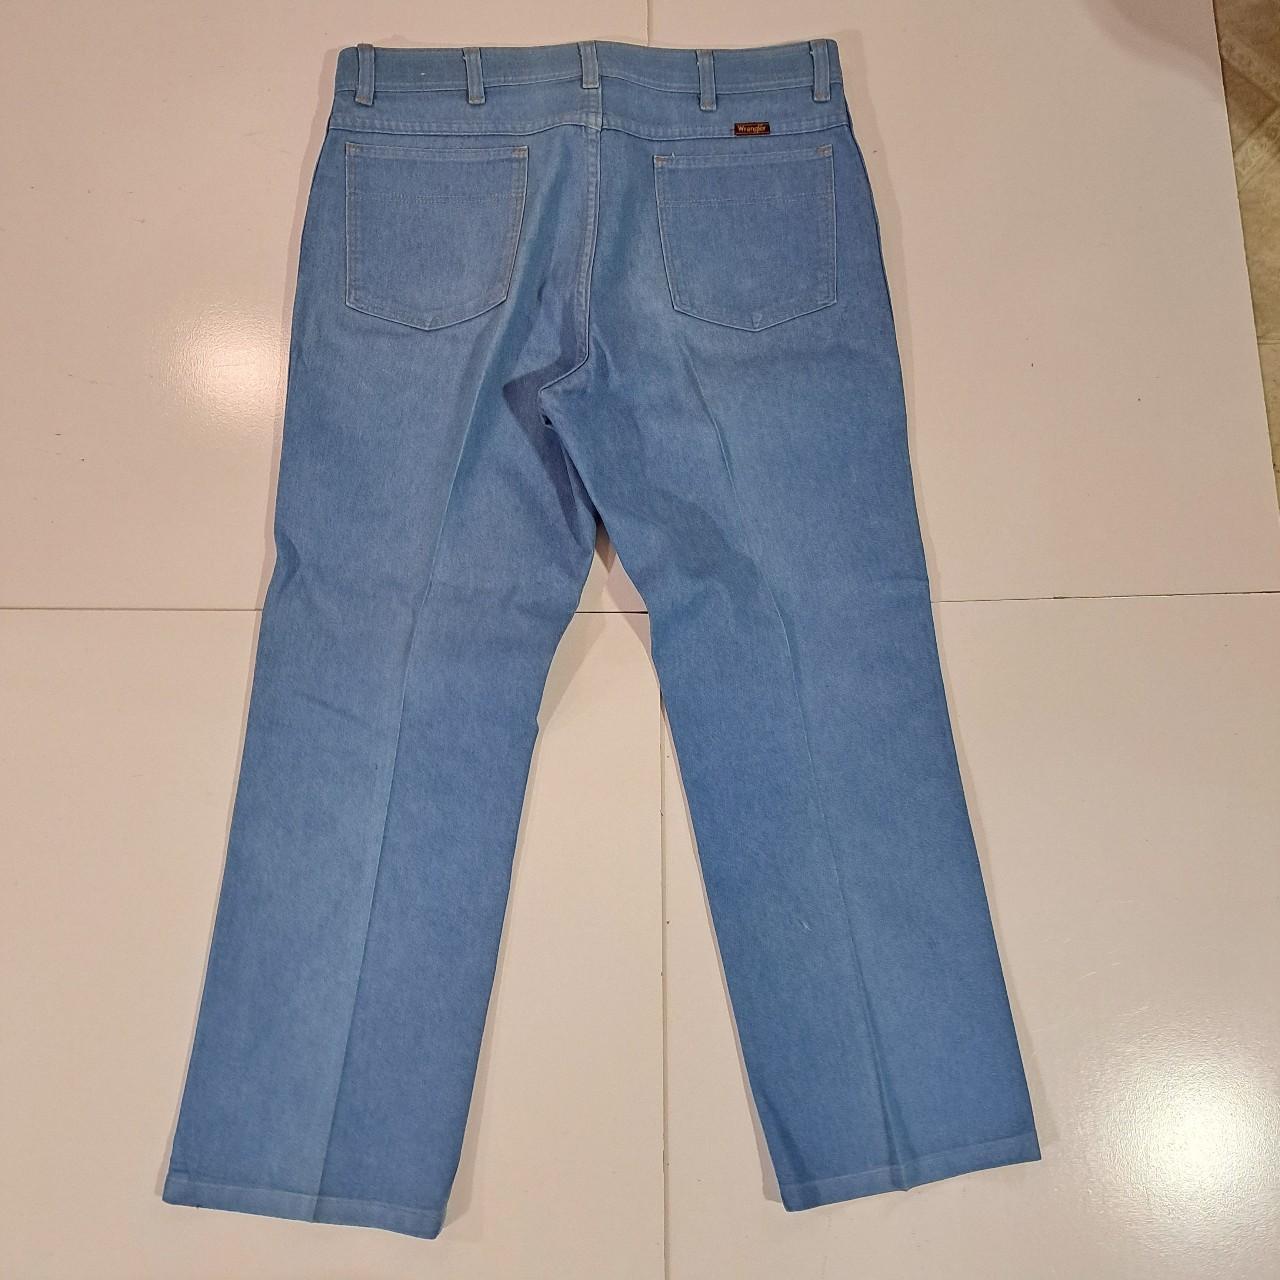 Vintage Wrangler Elite Jeans Very Lightwash denim... - Depop